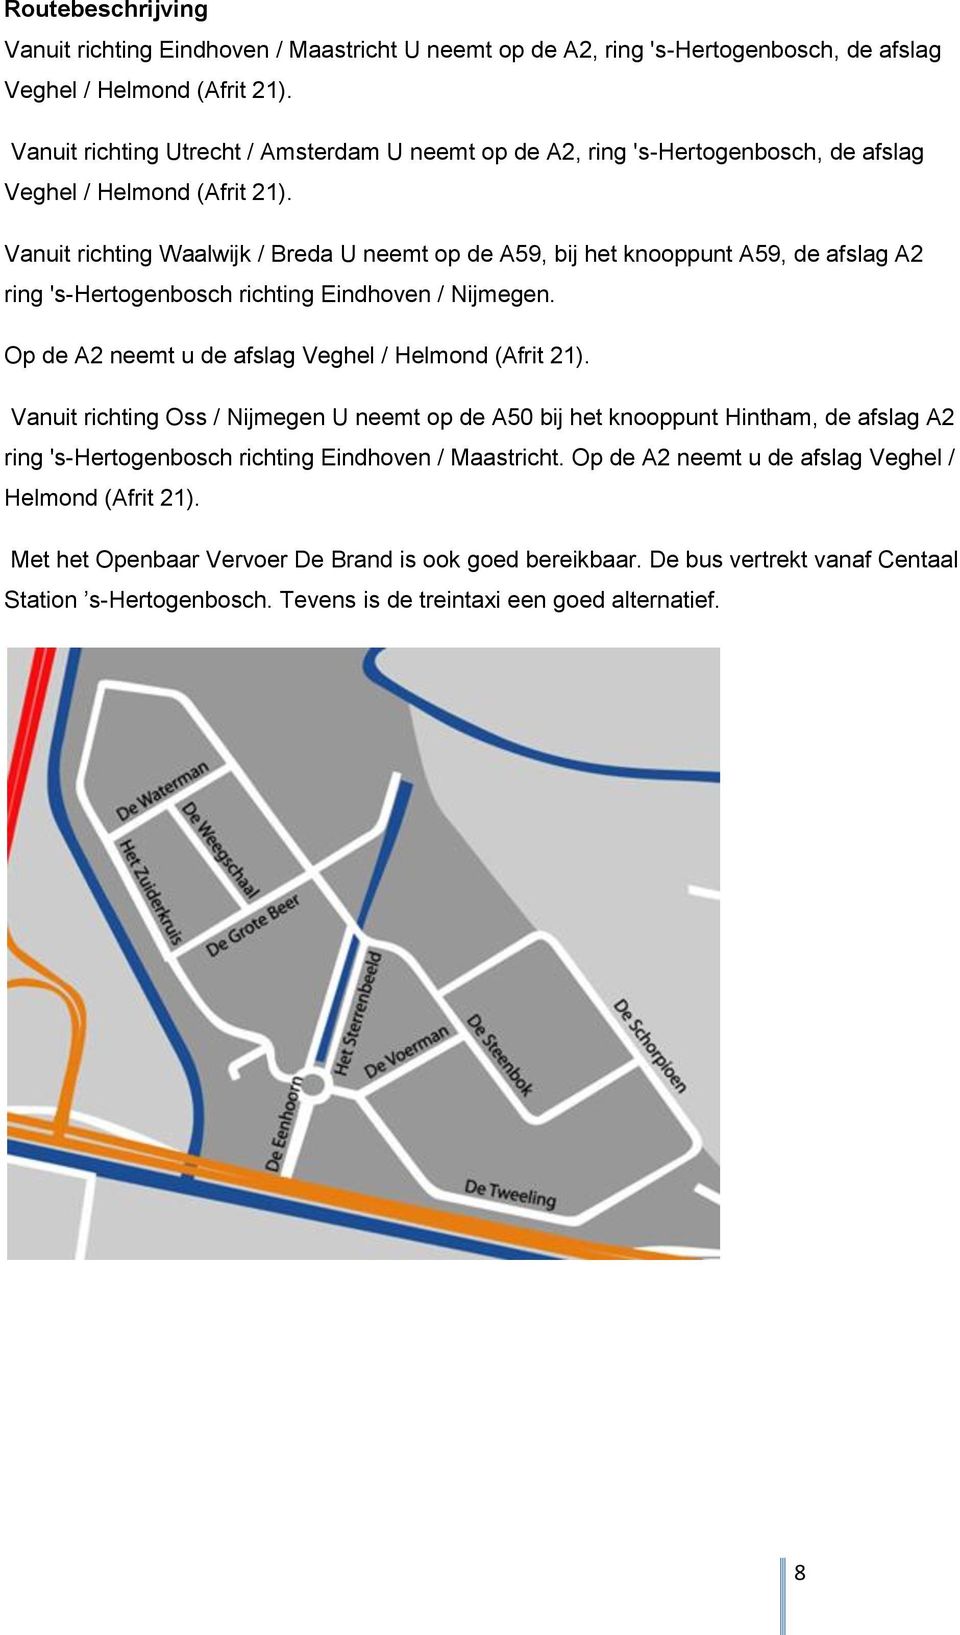 Vanuit richting Waalwijk / Breda U neemt op de A59, bij het knooppunt A59, de afslag A2 ring 's-hertogenbosch richting Eindhoven / Nijmegen. Op de A2 neemt u de afslag Veghel / Helmond (Afrit 21).